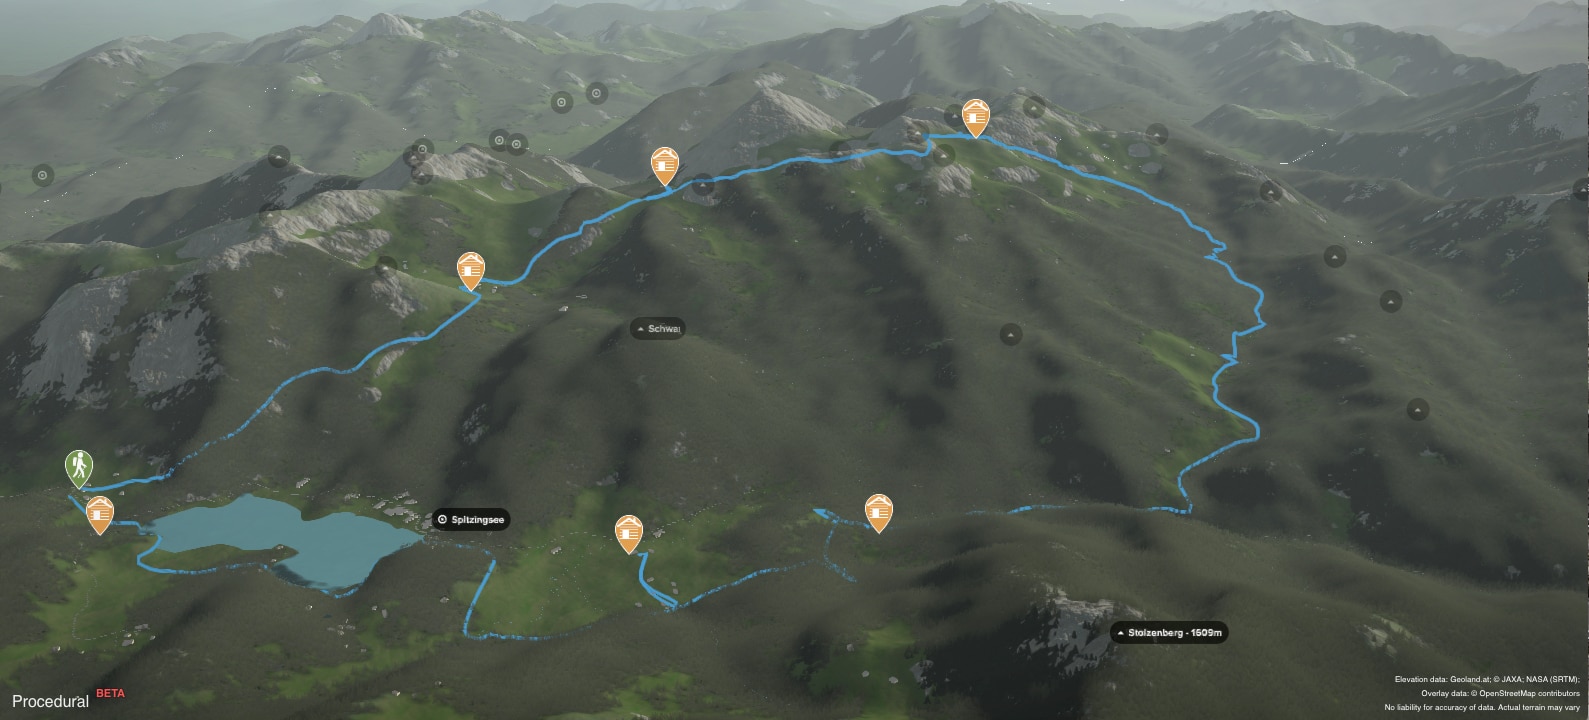 Rund um den Spitzingsee in den Bayerischen Voralpen: 3D-Kartenausschnitt der Gesamtstrecke